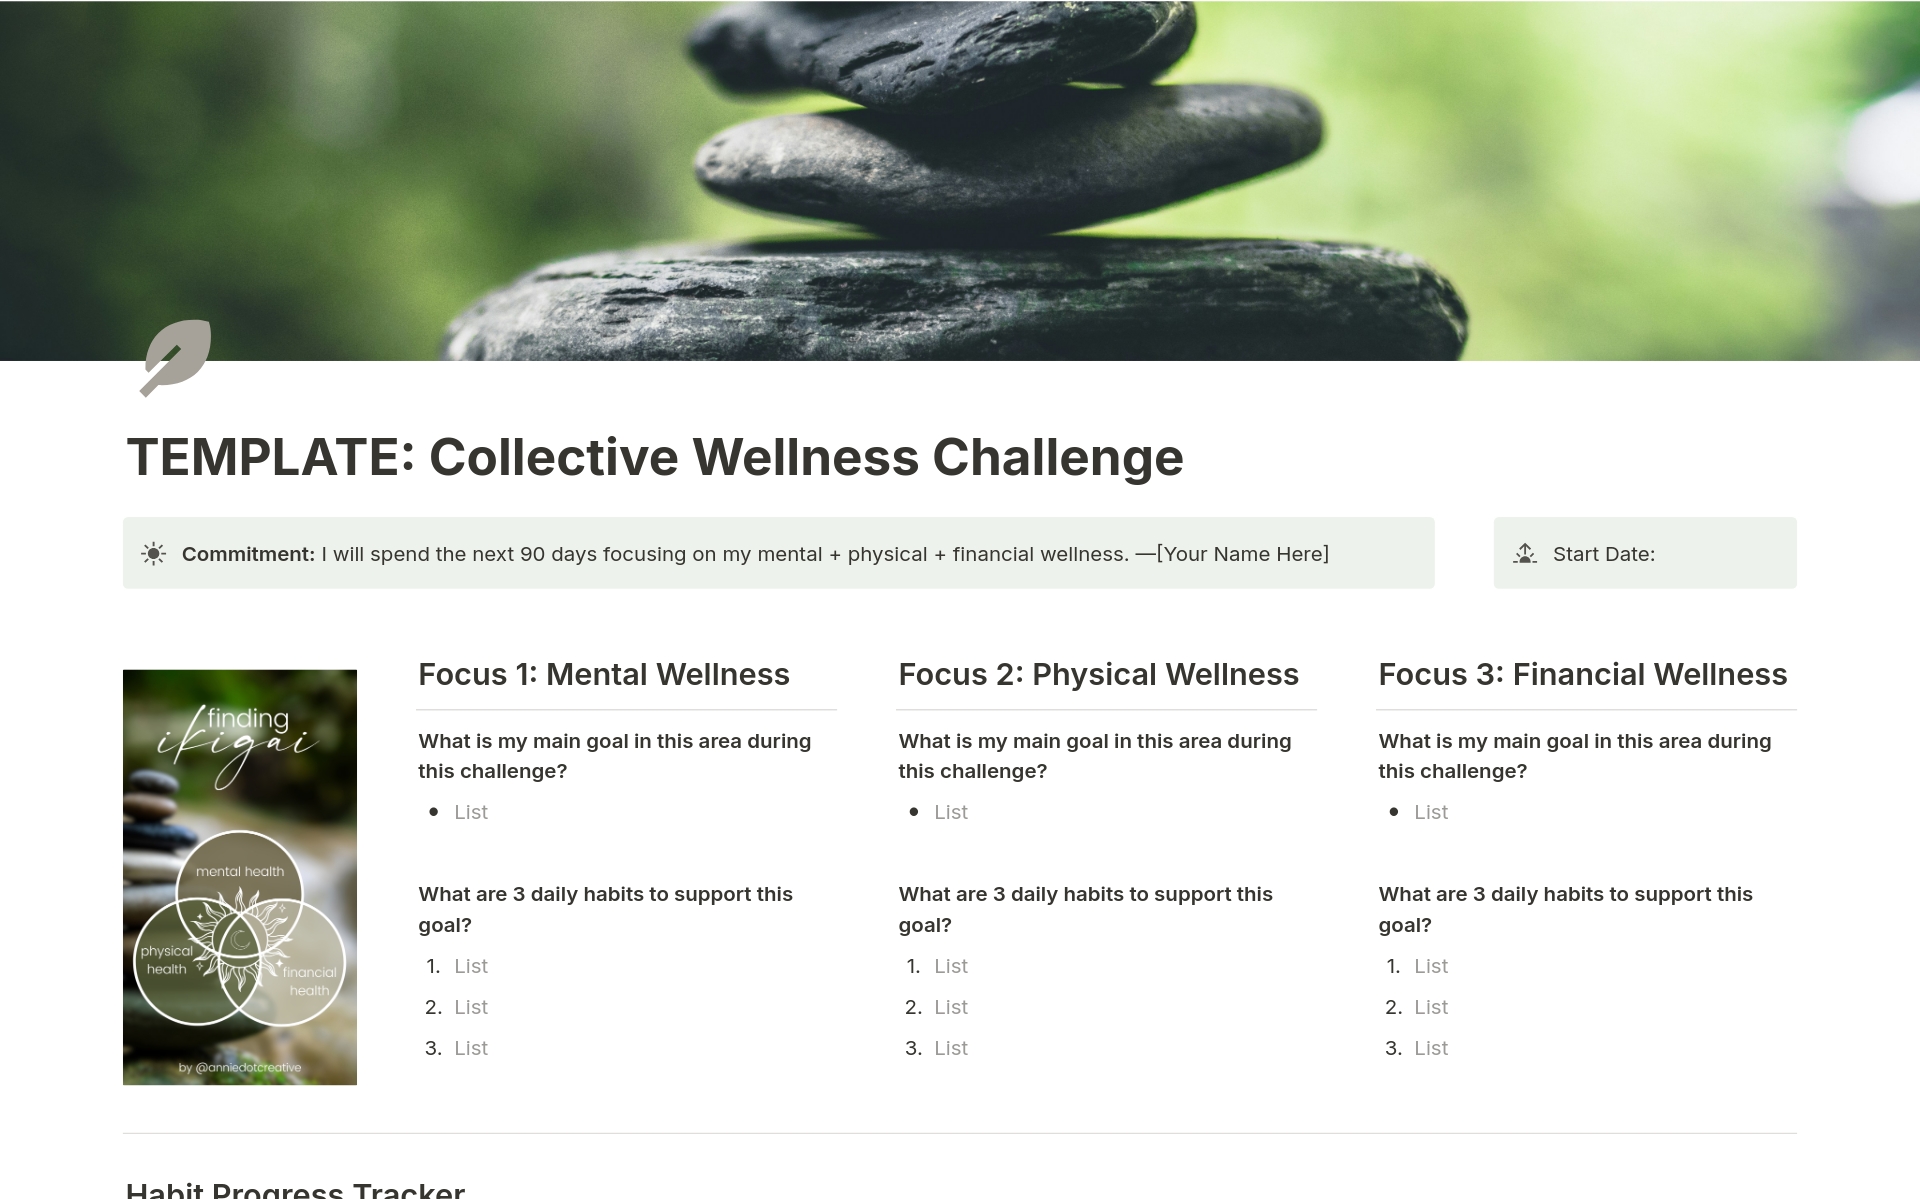 Vista previa de una plantilla para Collective Wellness Challenge